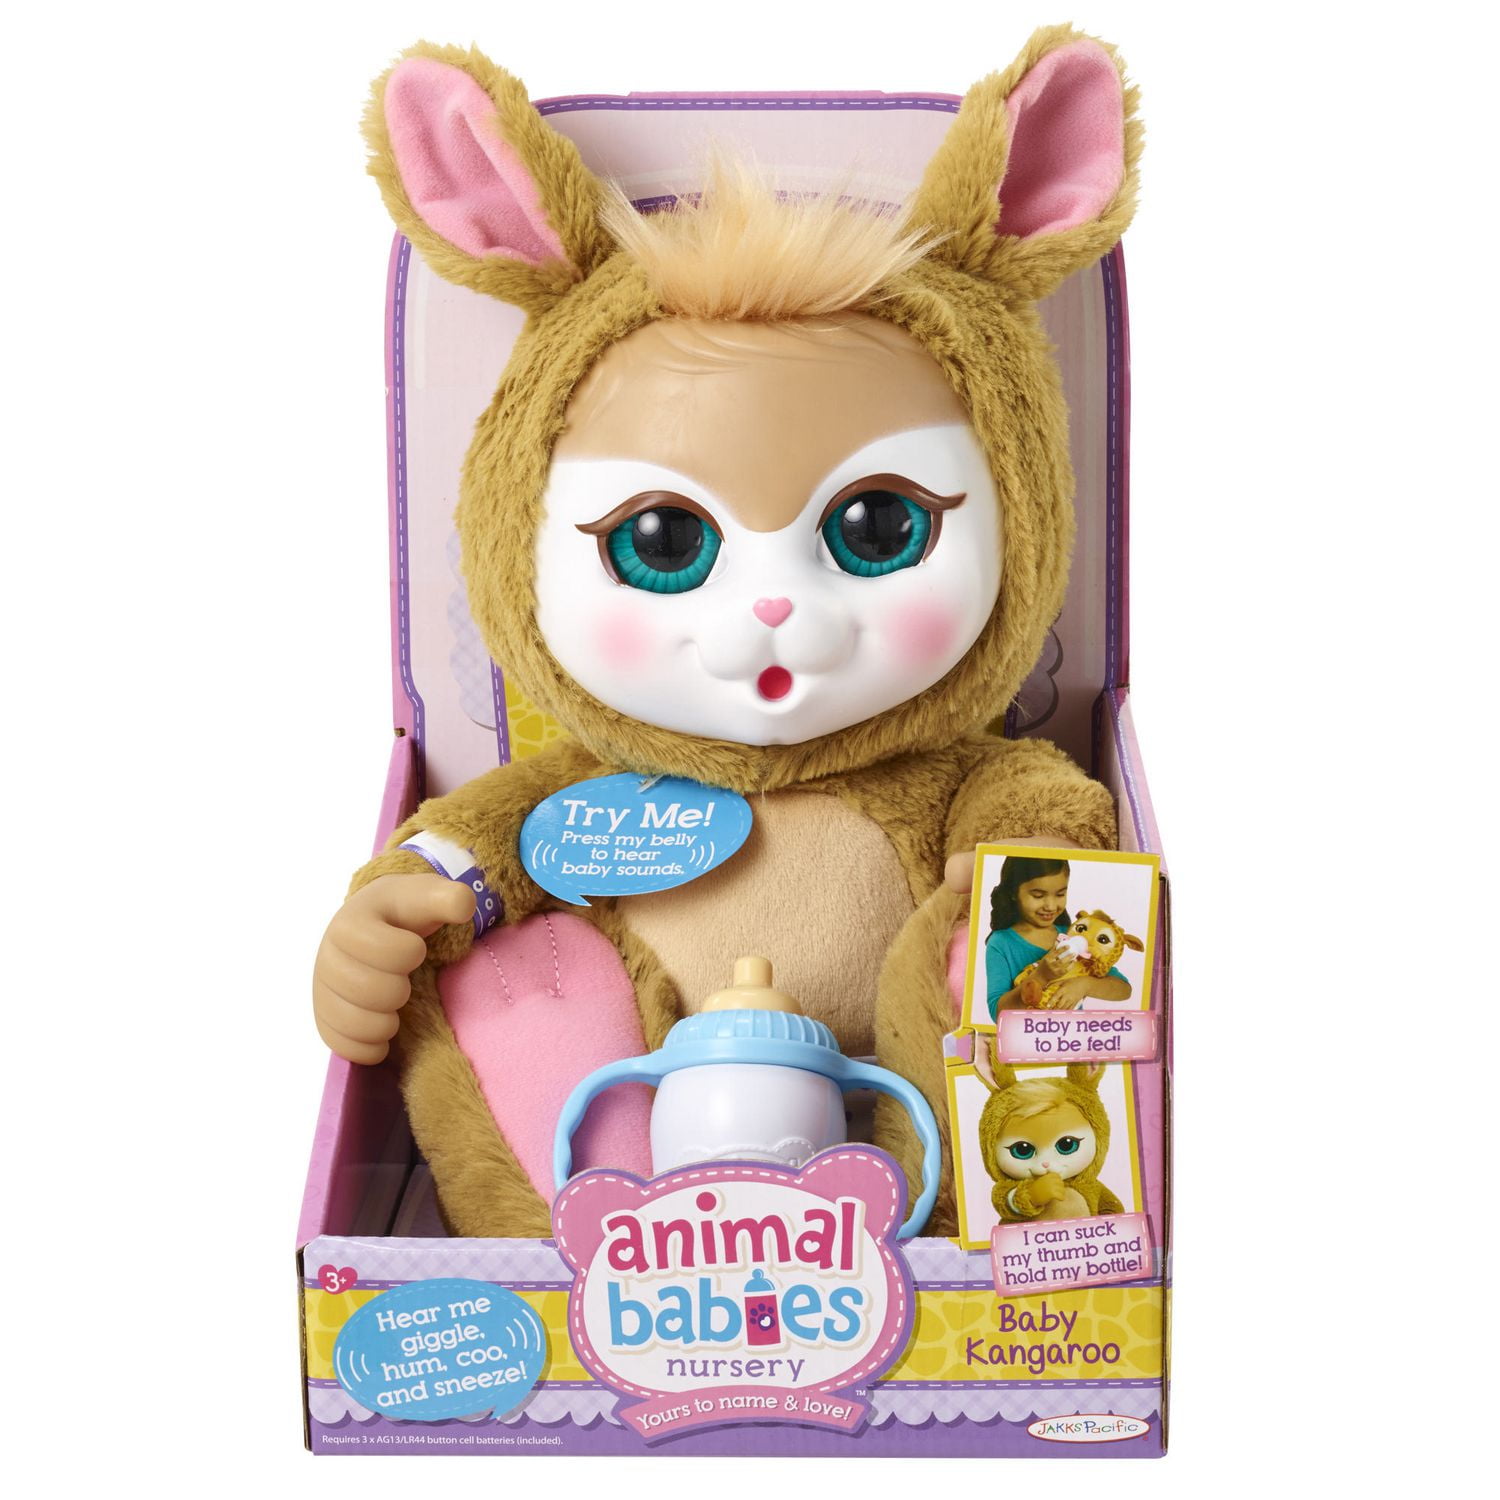 Animal Babies Nursery Deluxe Electronic Plush Toy - Baby Kangaroo 